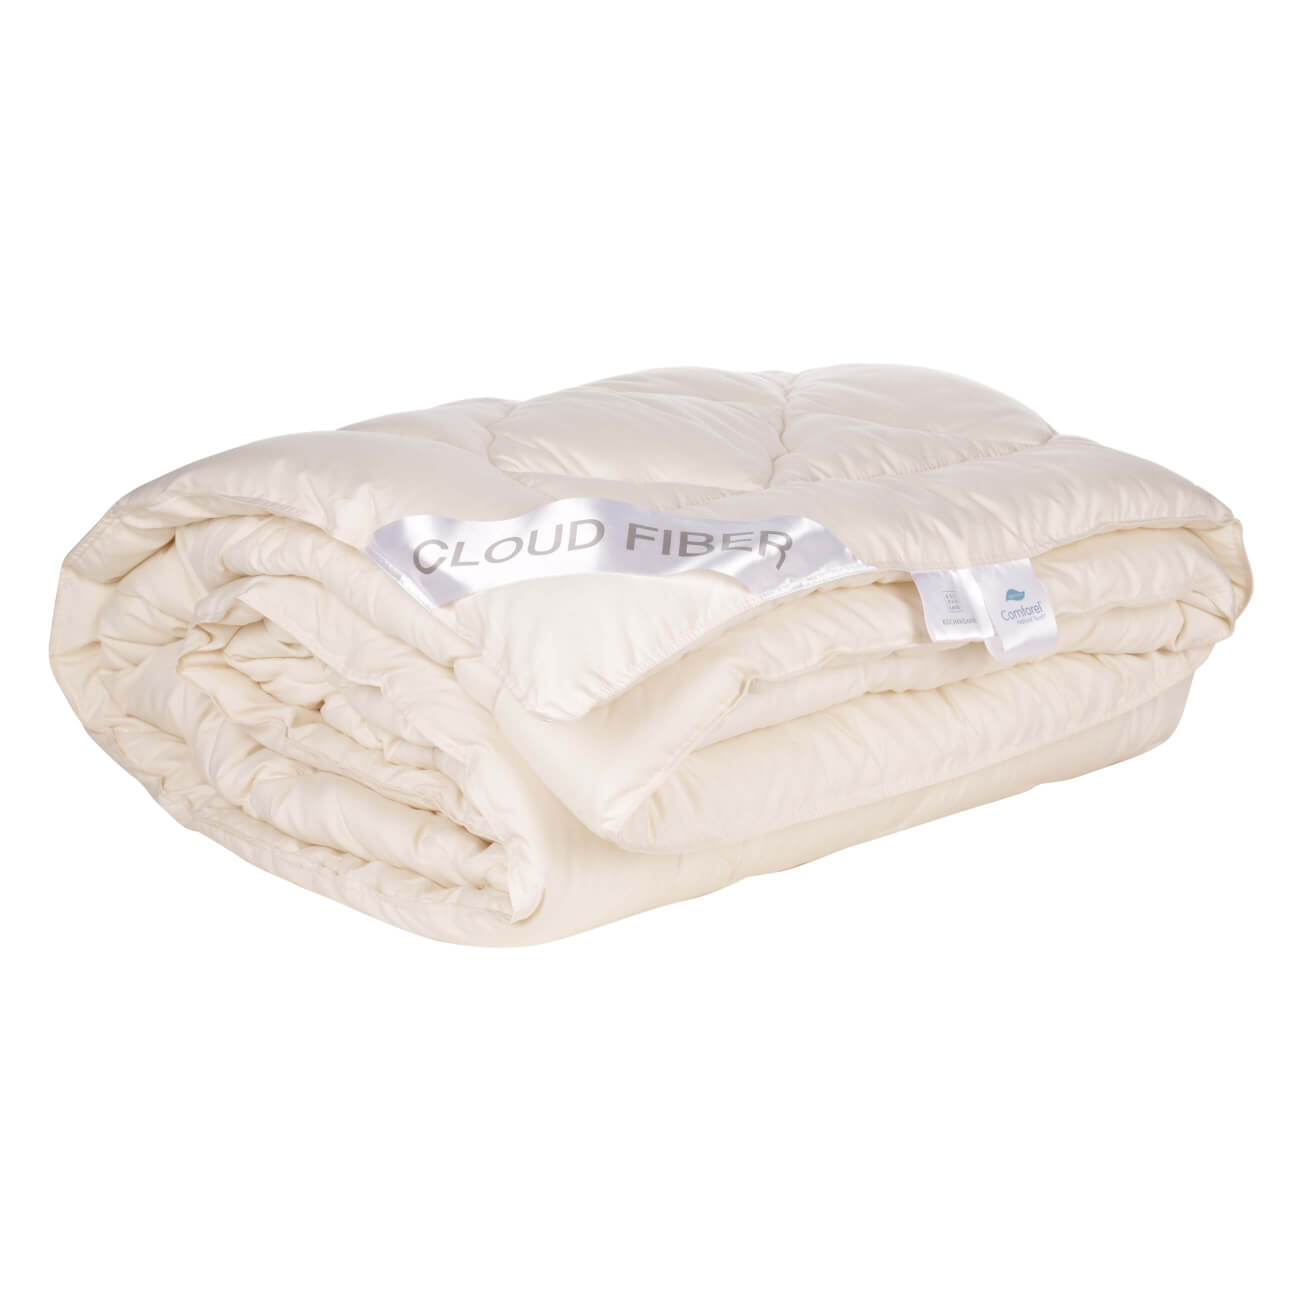 Одеяло, 200х220 см, микрофибра/дакрон, молочное, Cloud fiber одеяло верблюжья шерсть оригинал облегченное р 200х220